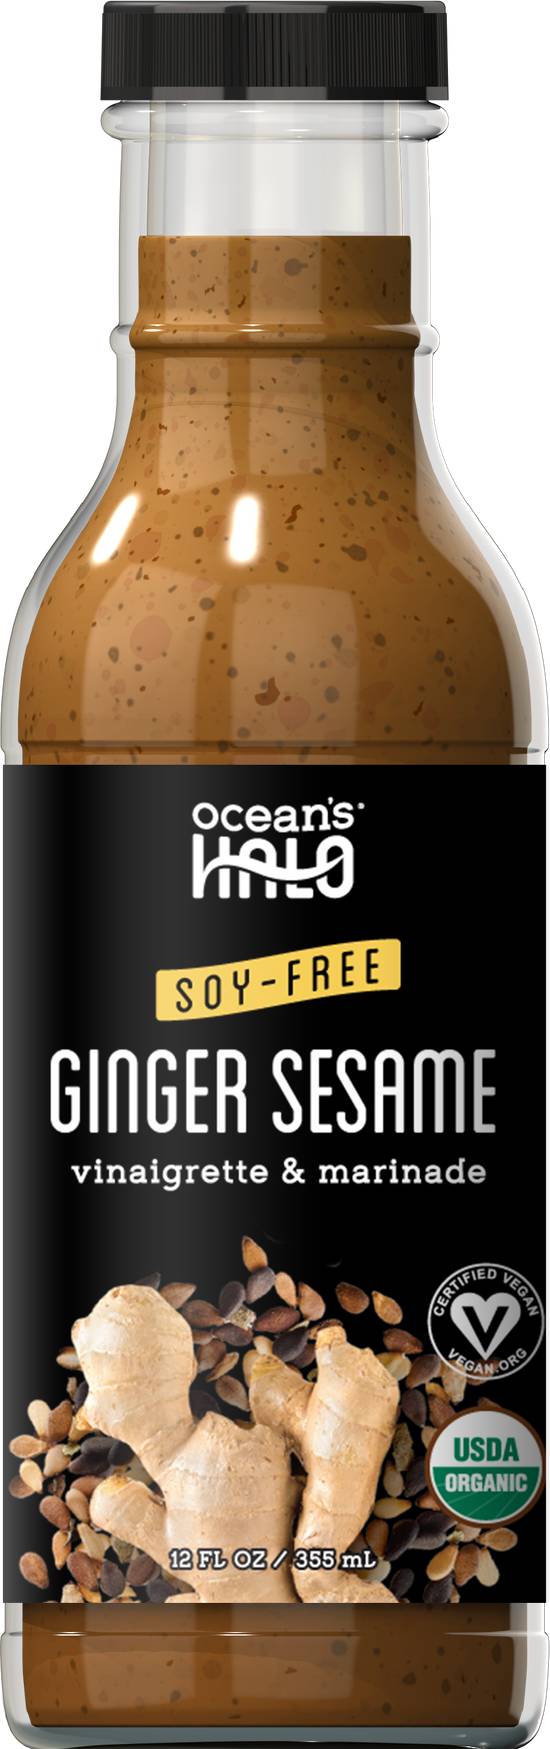 Oceans Halo Ginger Sesame Vinaigrette & Marinade - 12 fl oz